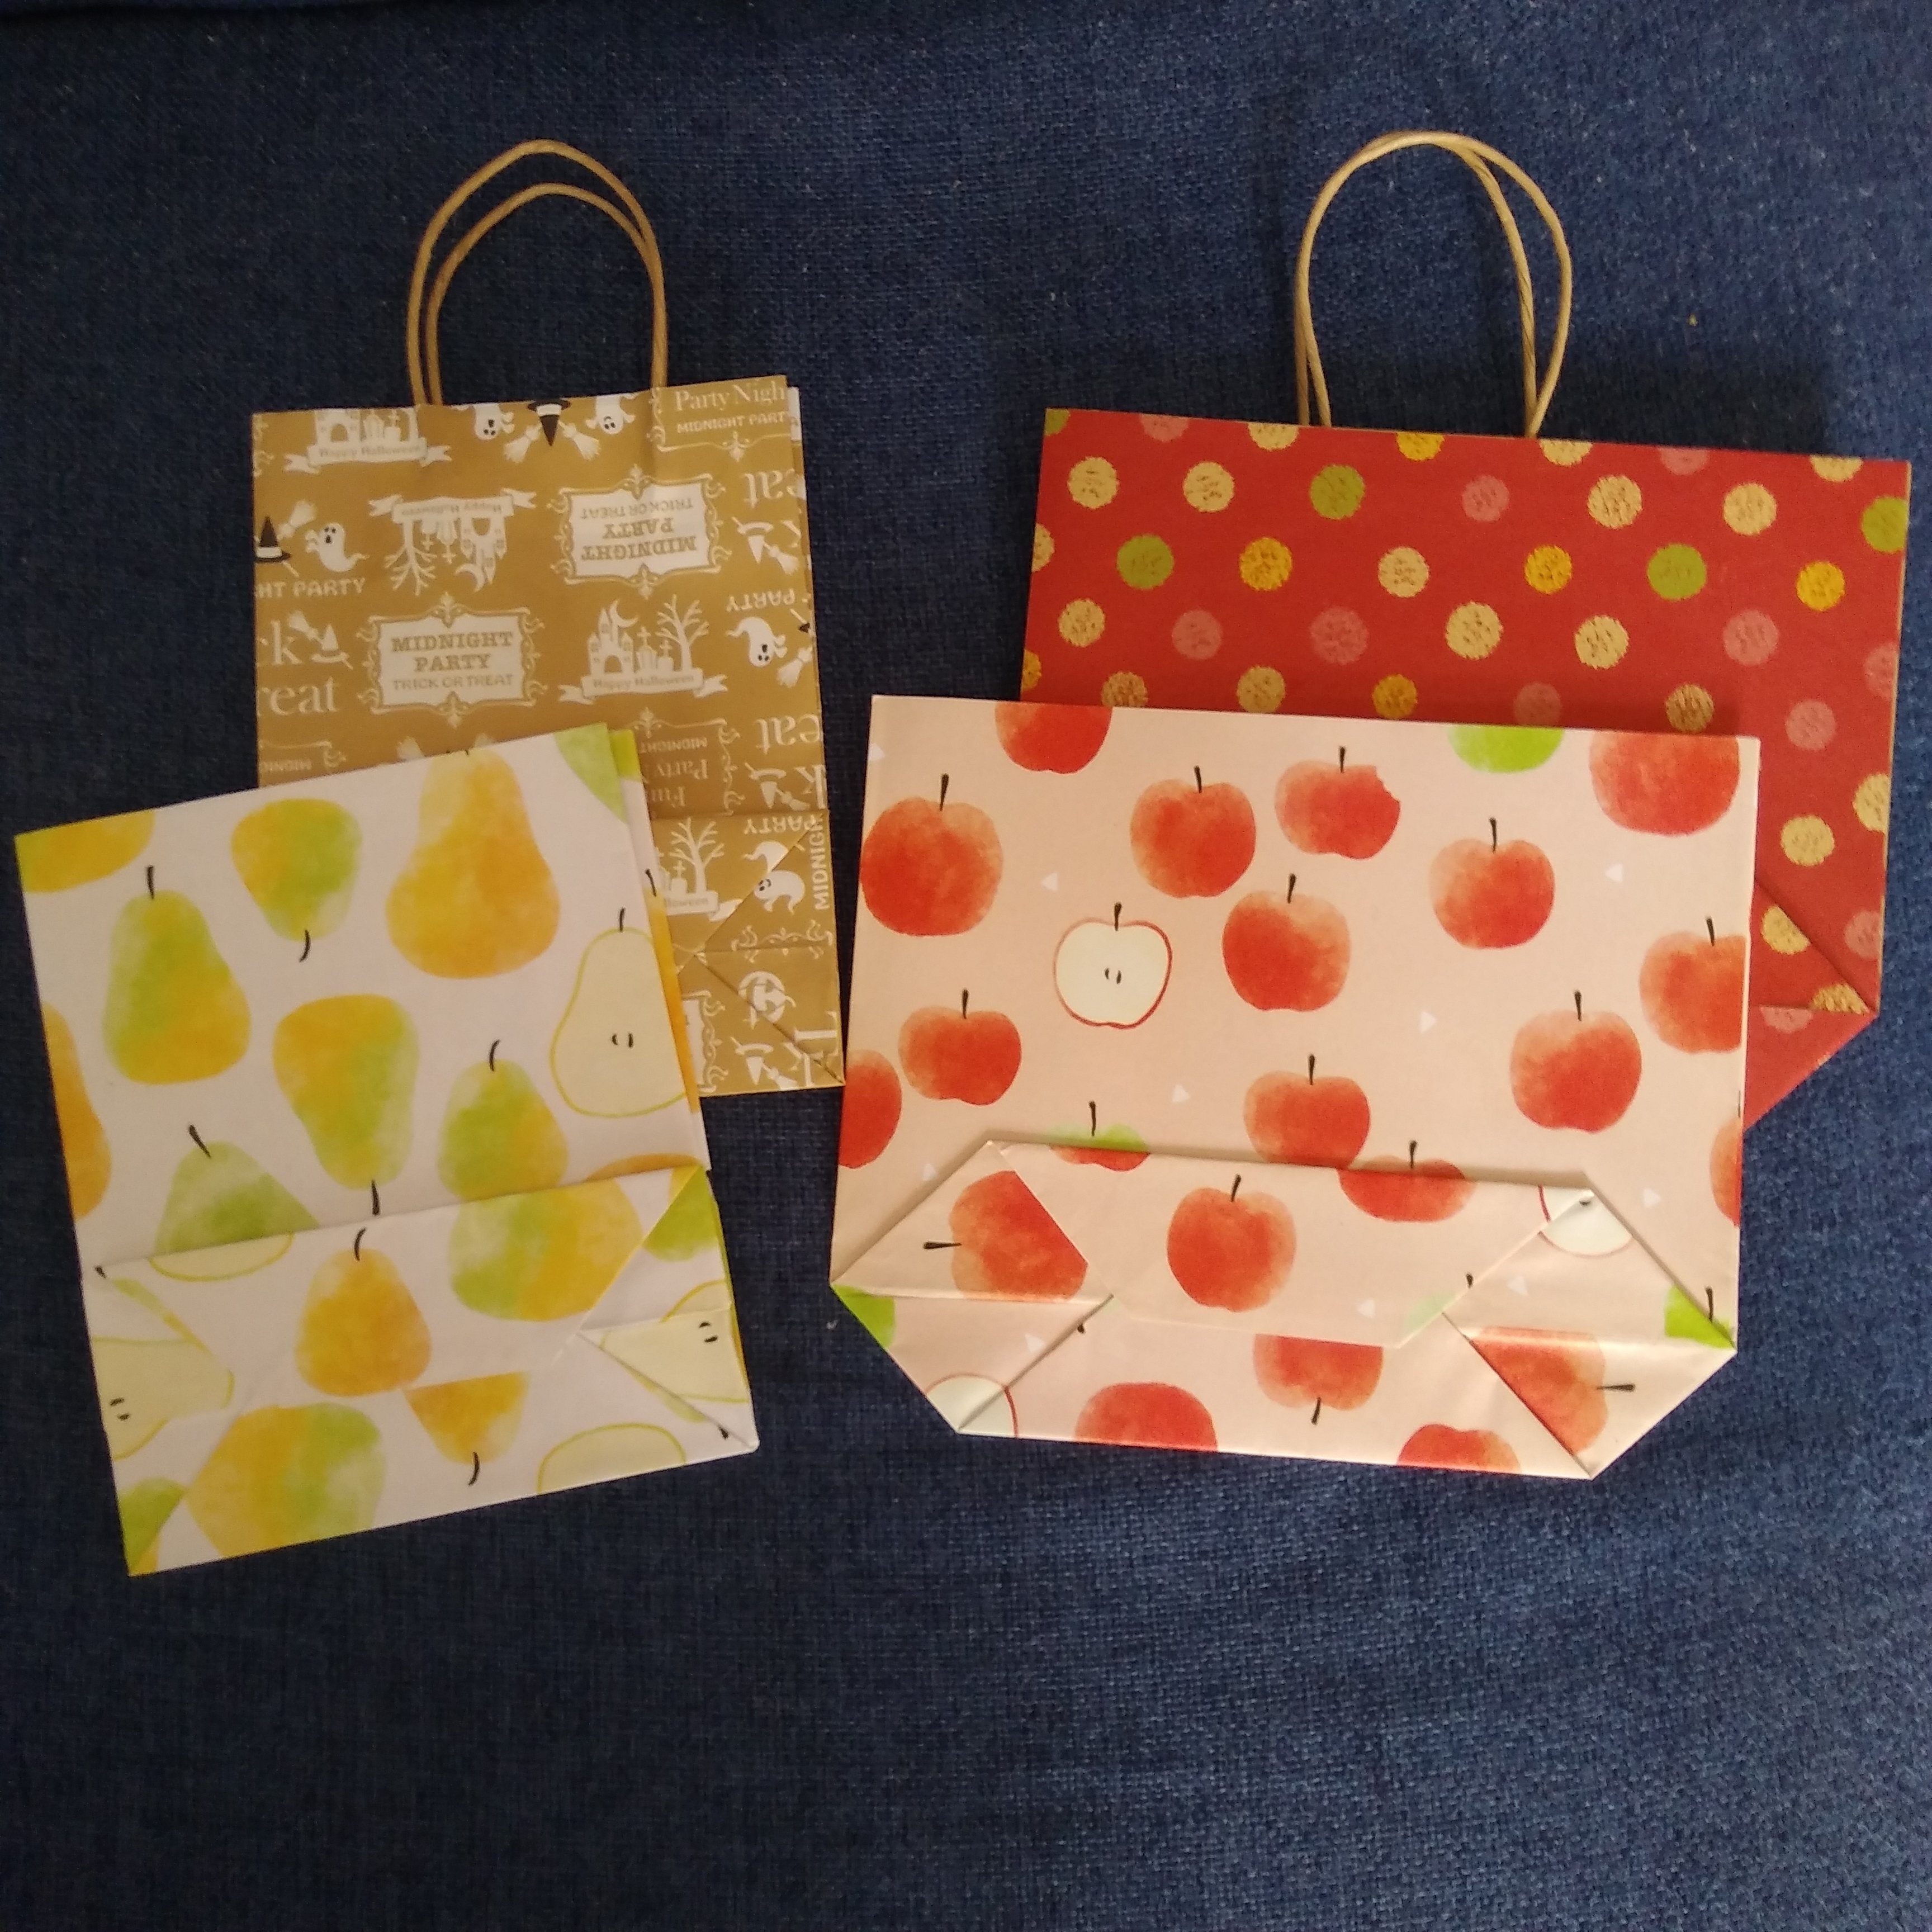 実は簡単 かわいい折り紙でミニサイズの紙袋を作ろう ハロウィーンに